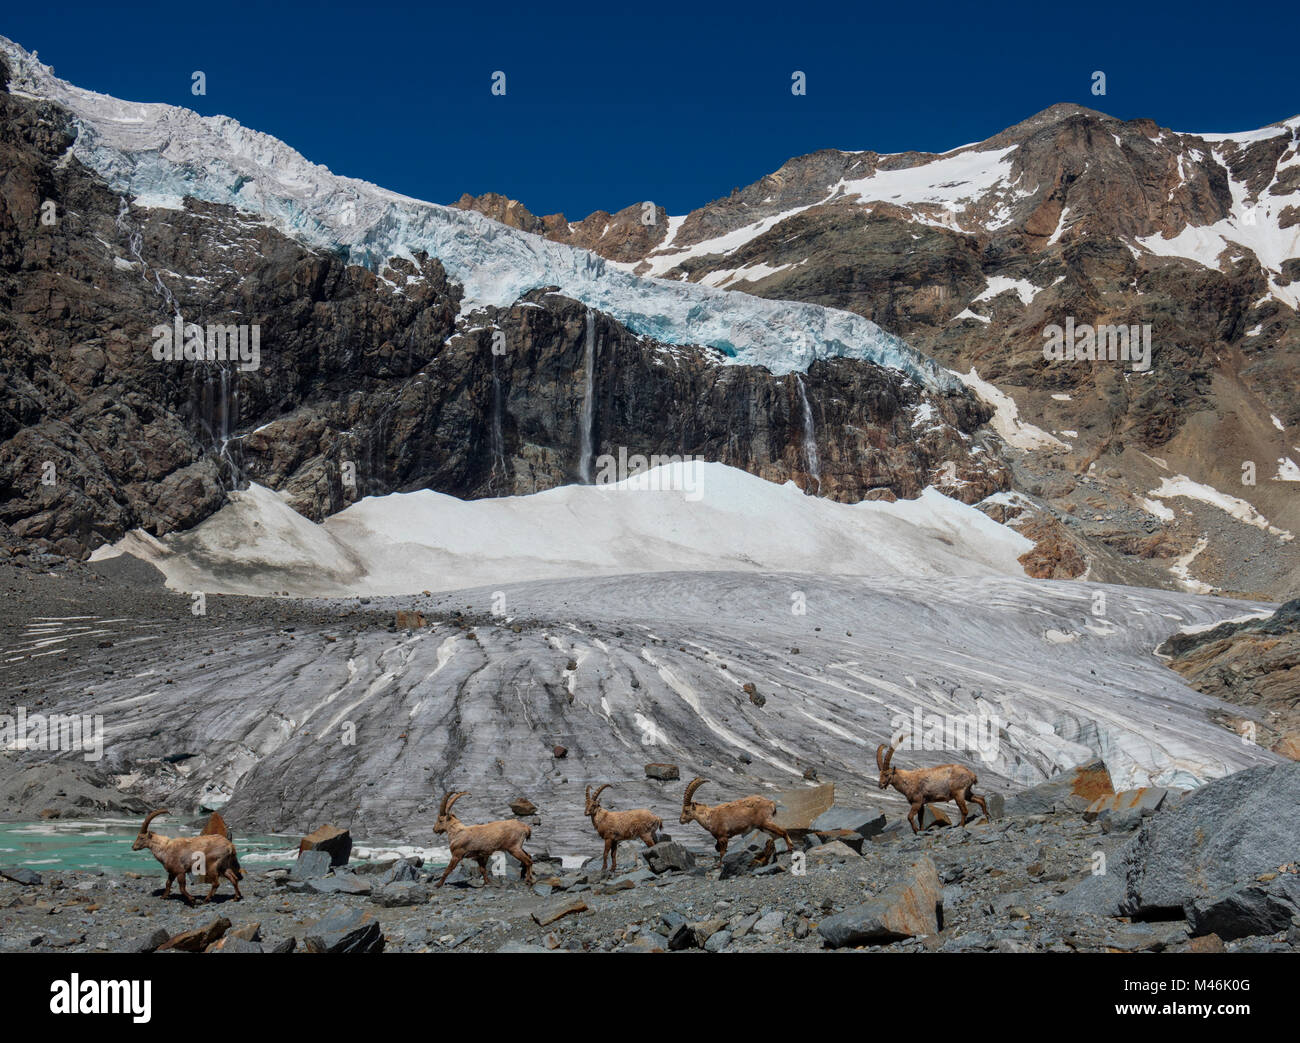 Troupeau de Bouquetin des Alpes marche à l'avant du glacier, Fellaria province Sondrio, Lombardie, Italie, Alpes, Europe Banque D'Images